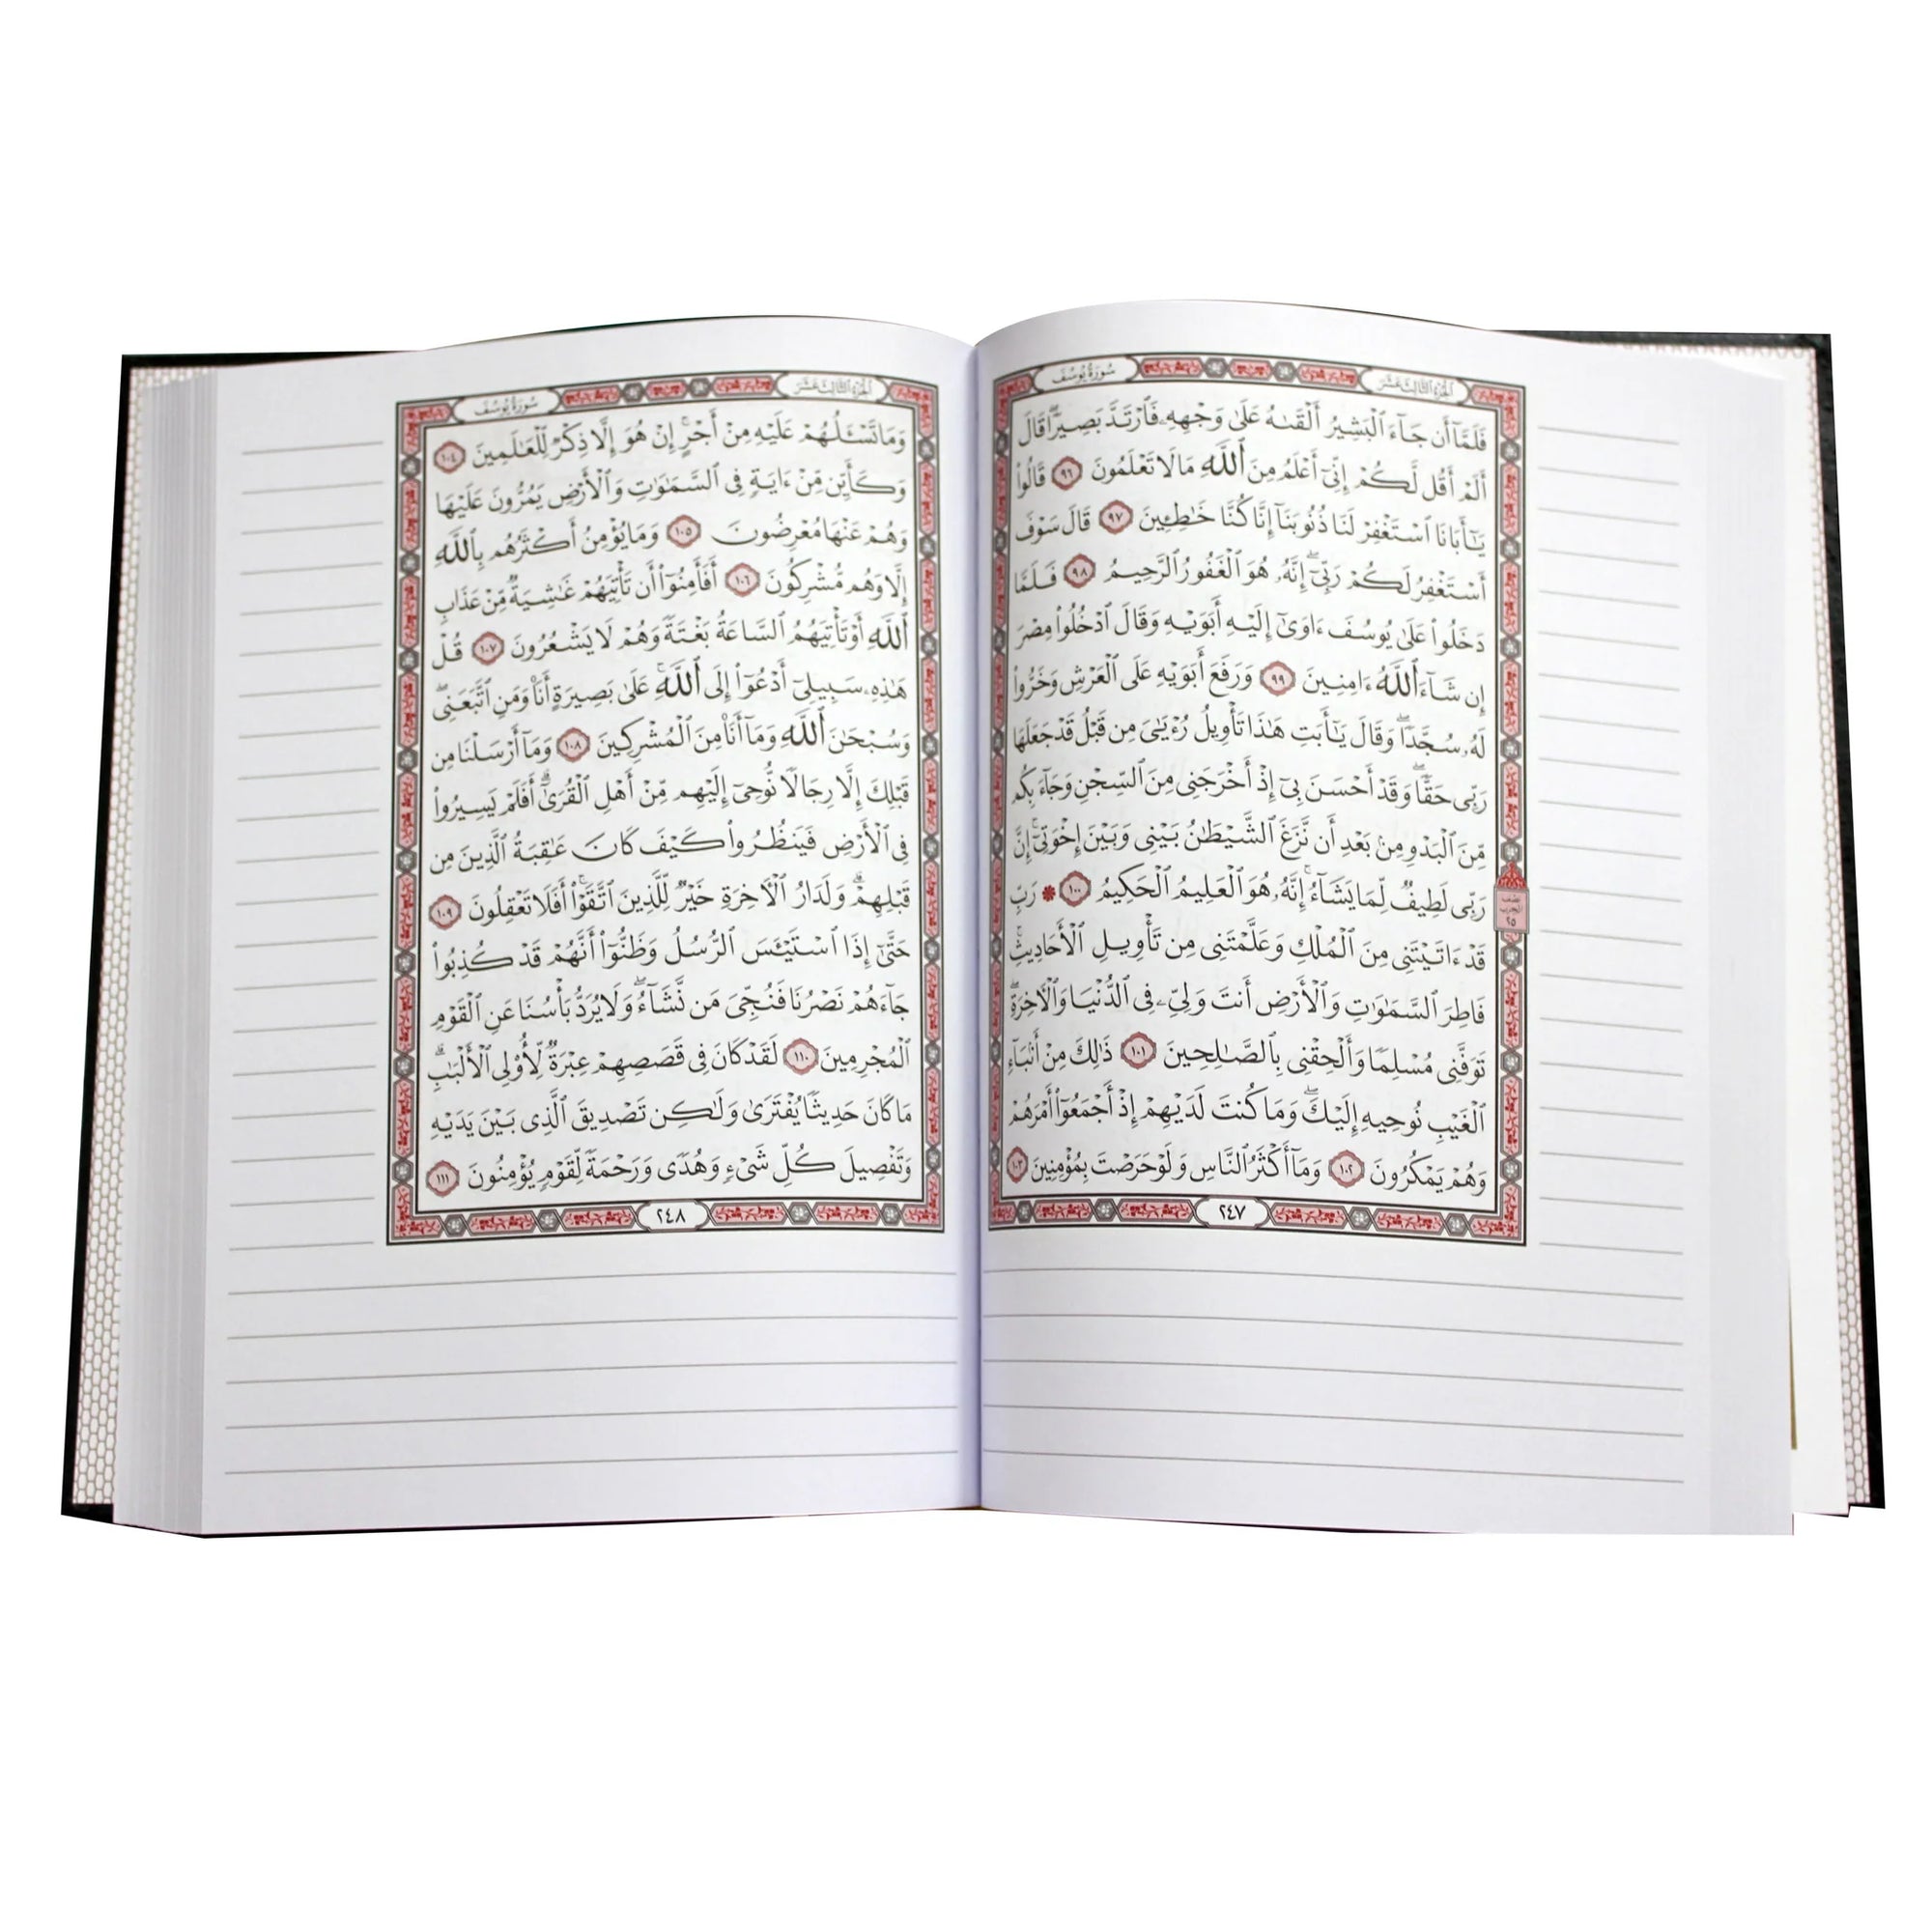 (القرآن الكريم (مصحف التدوين - Mushaf Tadween - Qur'an with Lined Margins